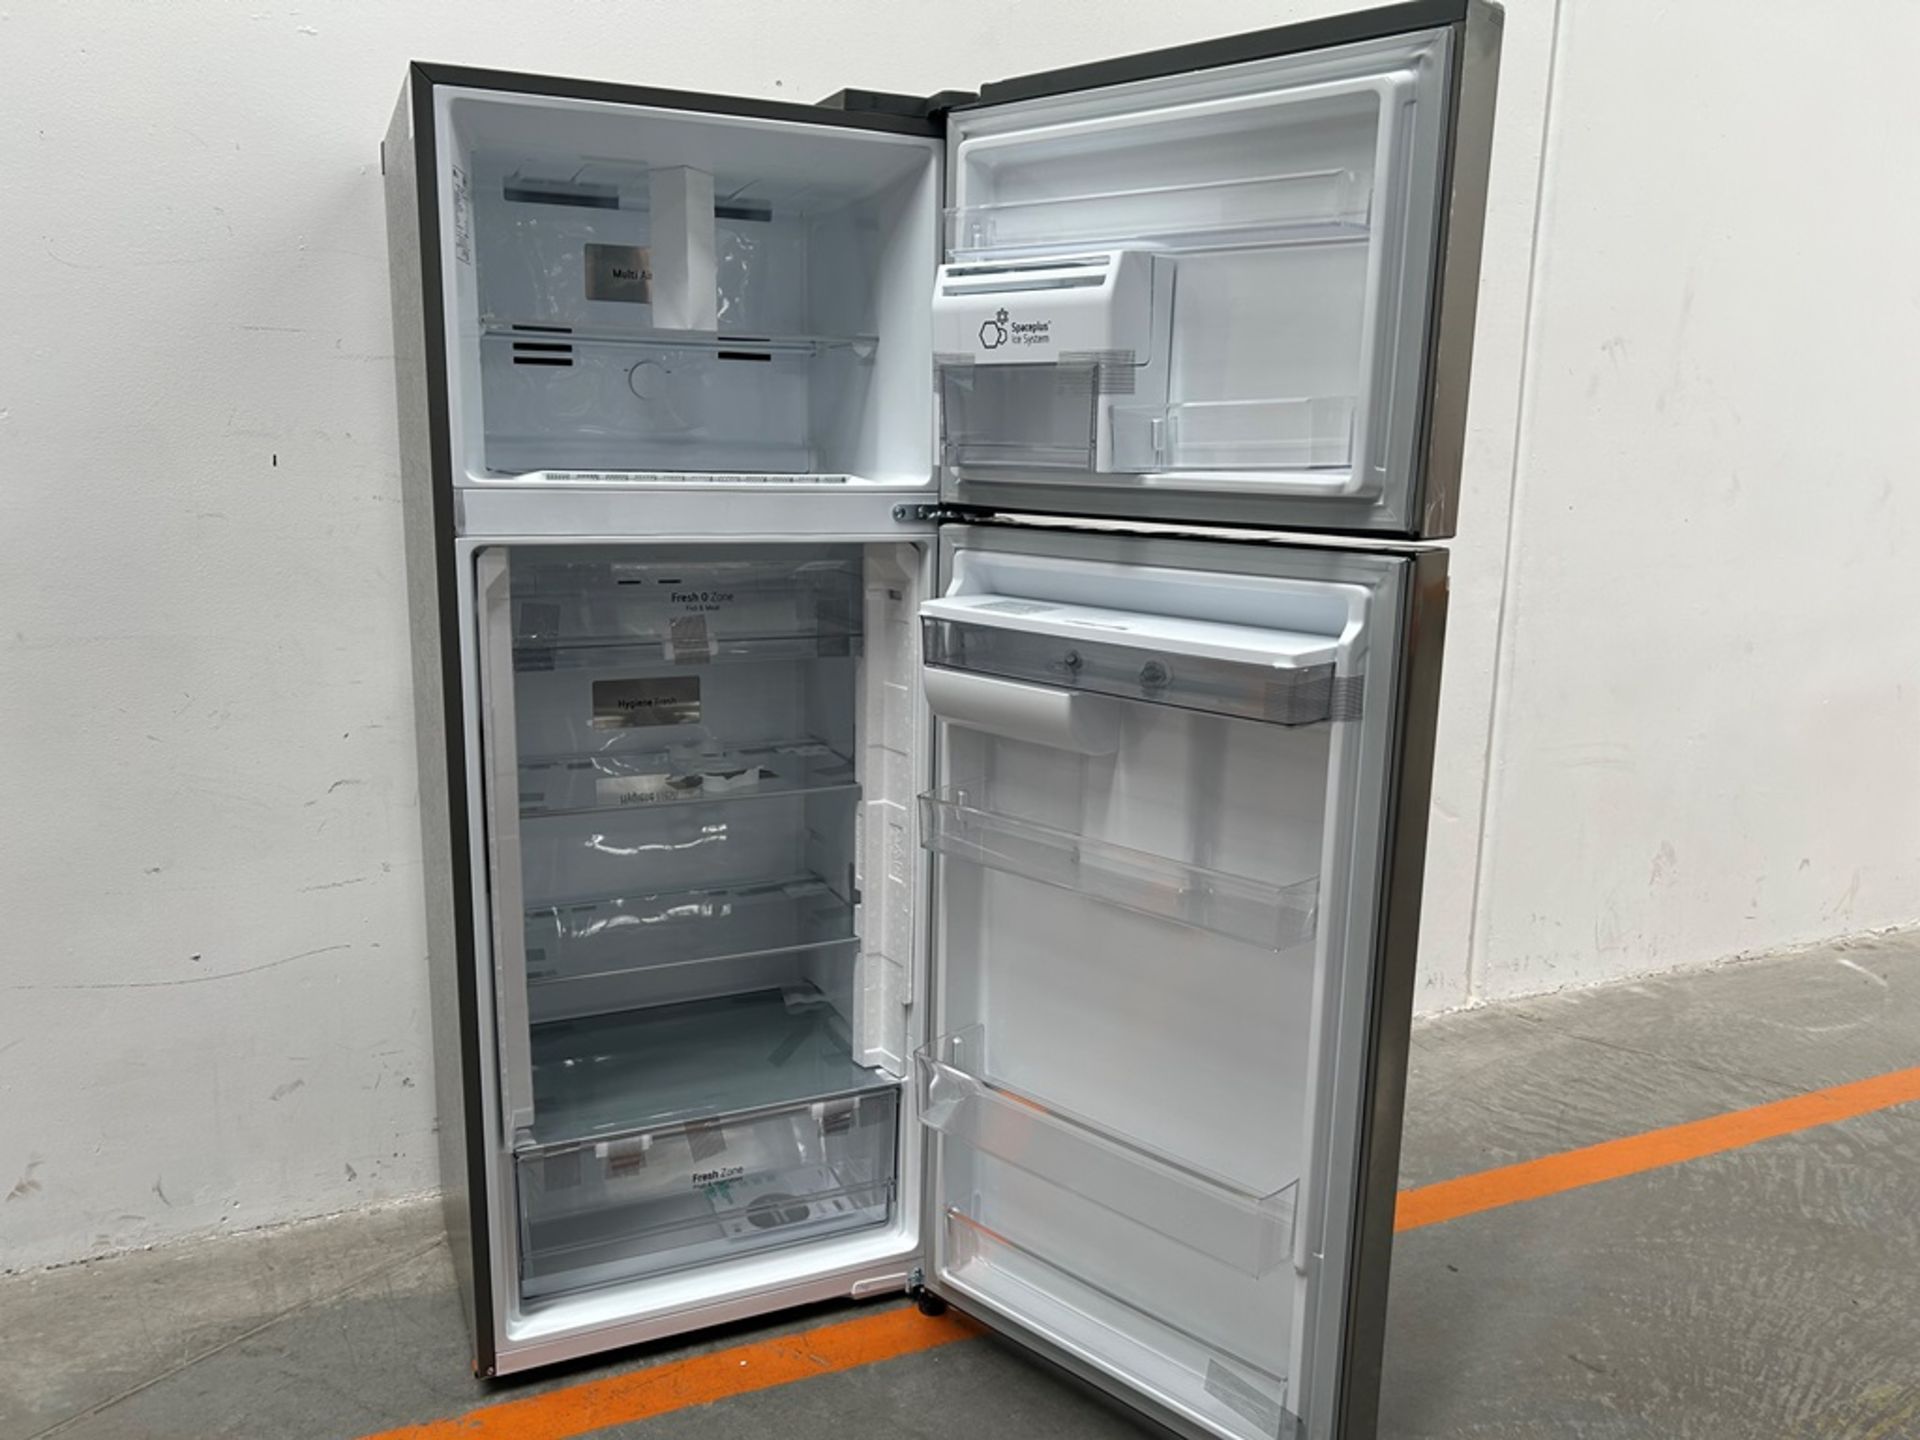 (NUEVO) Refrigerador con dispensador de agua Marca LG, Modelo VT40AWP, Serie 1S414, Color GRIS - Image 4 of 11